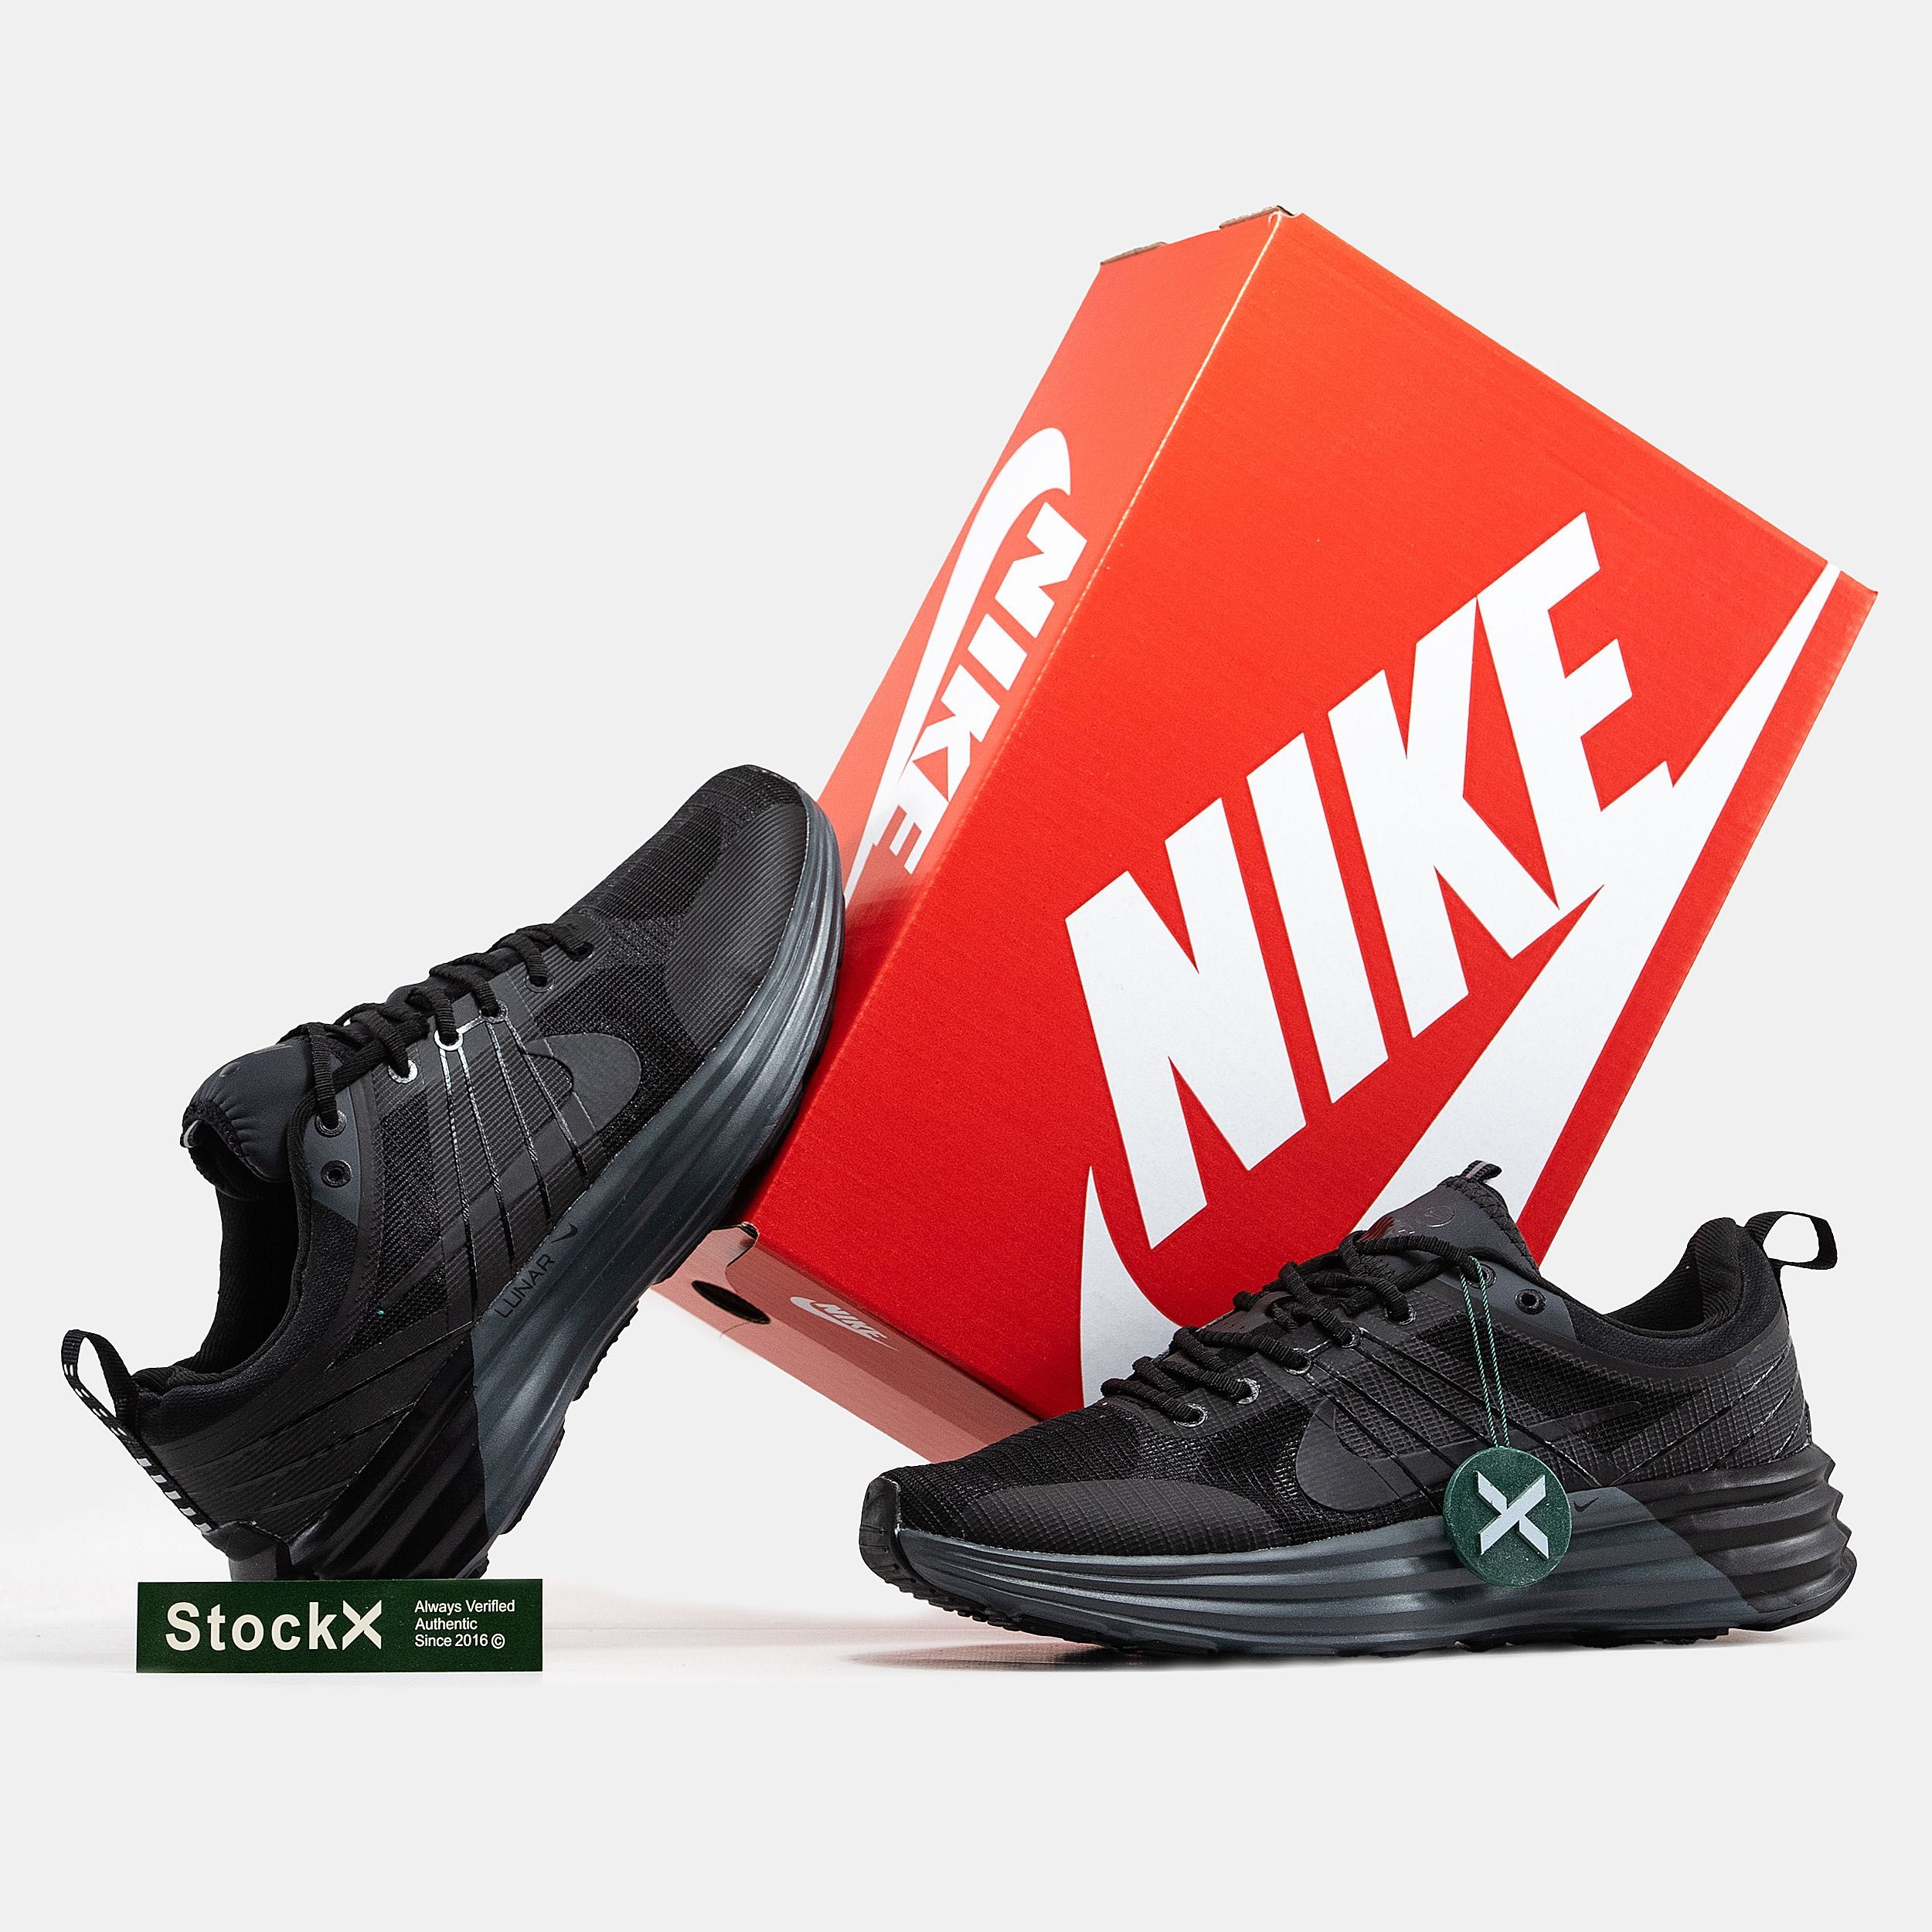 Мужские кроссовки Nike Lunar Roam black. Размеры 40-45